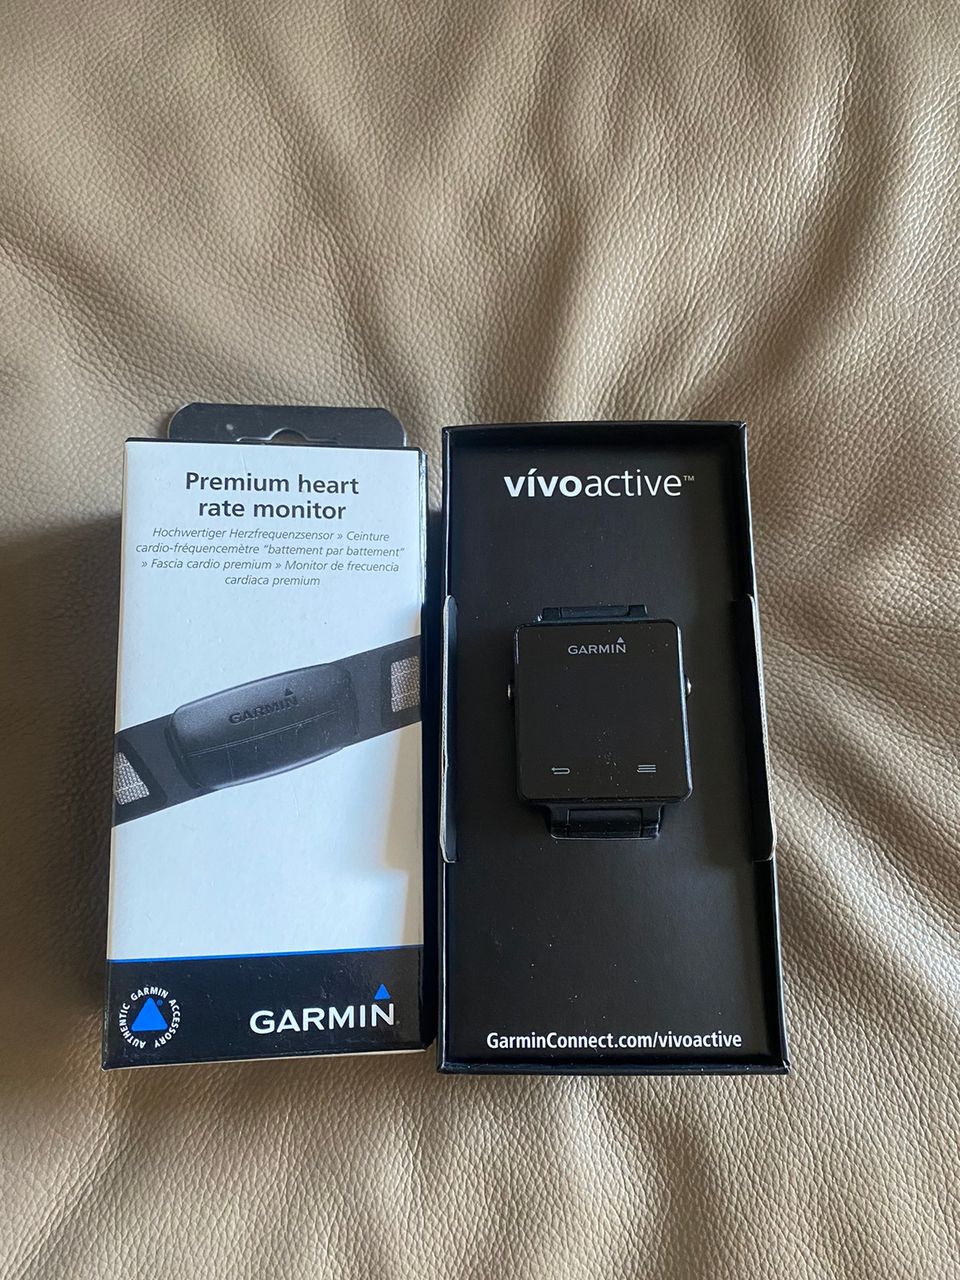 Uudet Garmin Vivoactive ja Premium heart rate monitor sykevyö